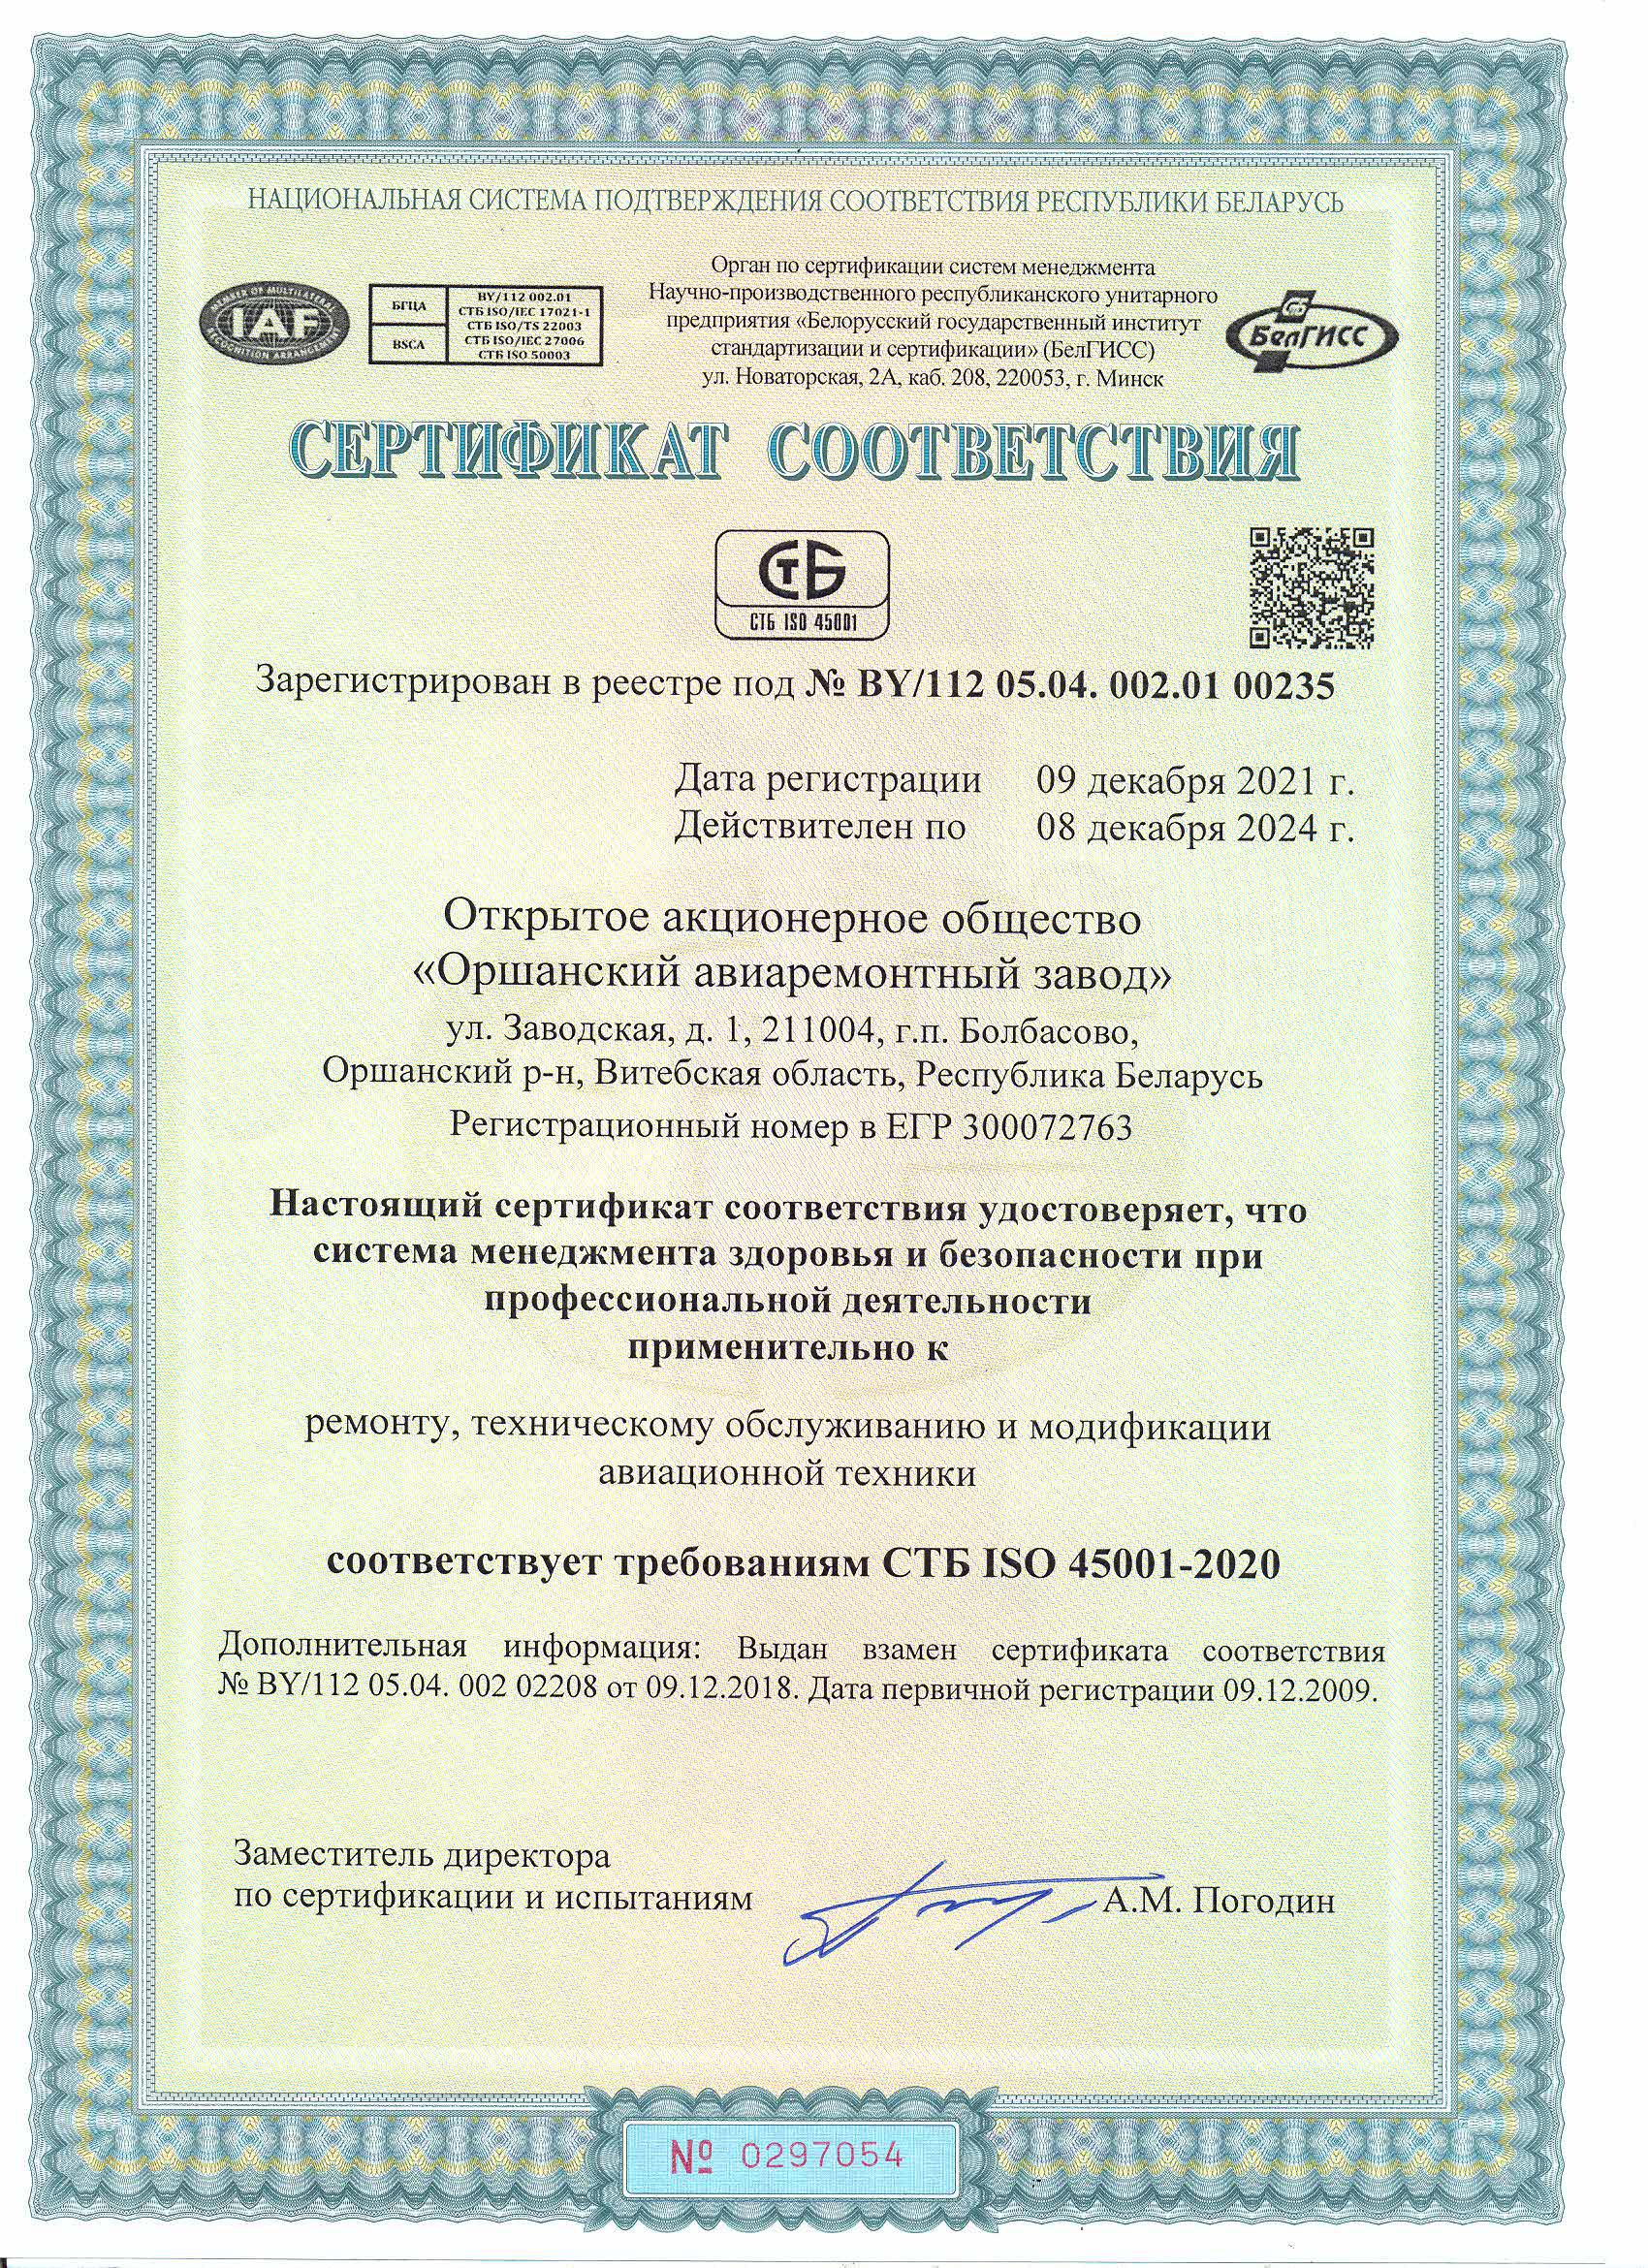 Сертификат СТБ ISO 45001-2020